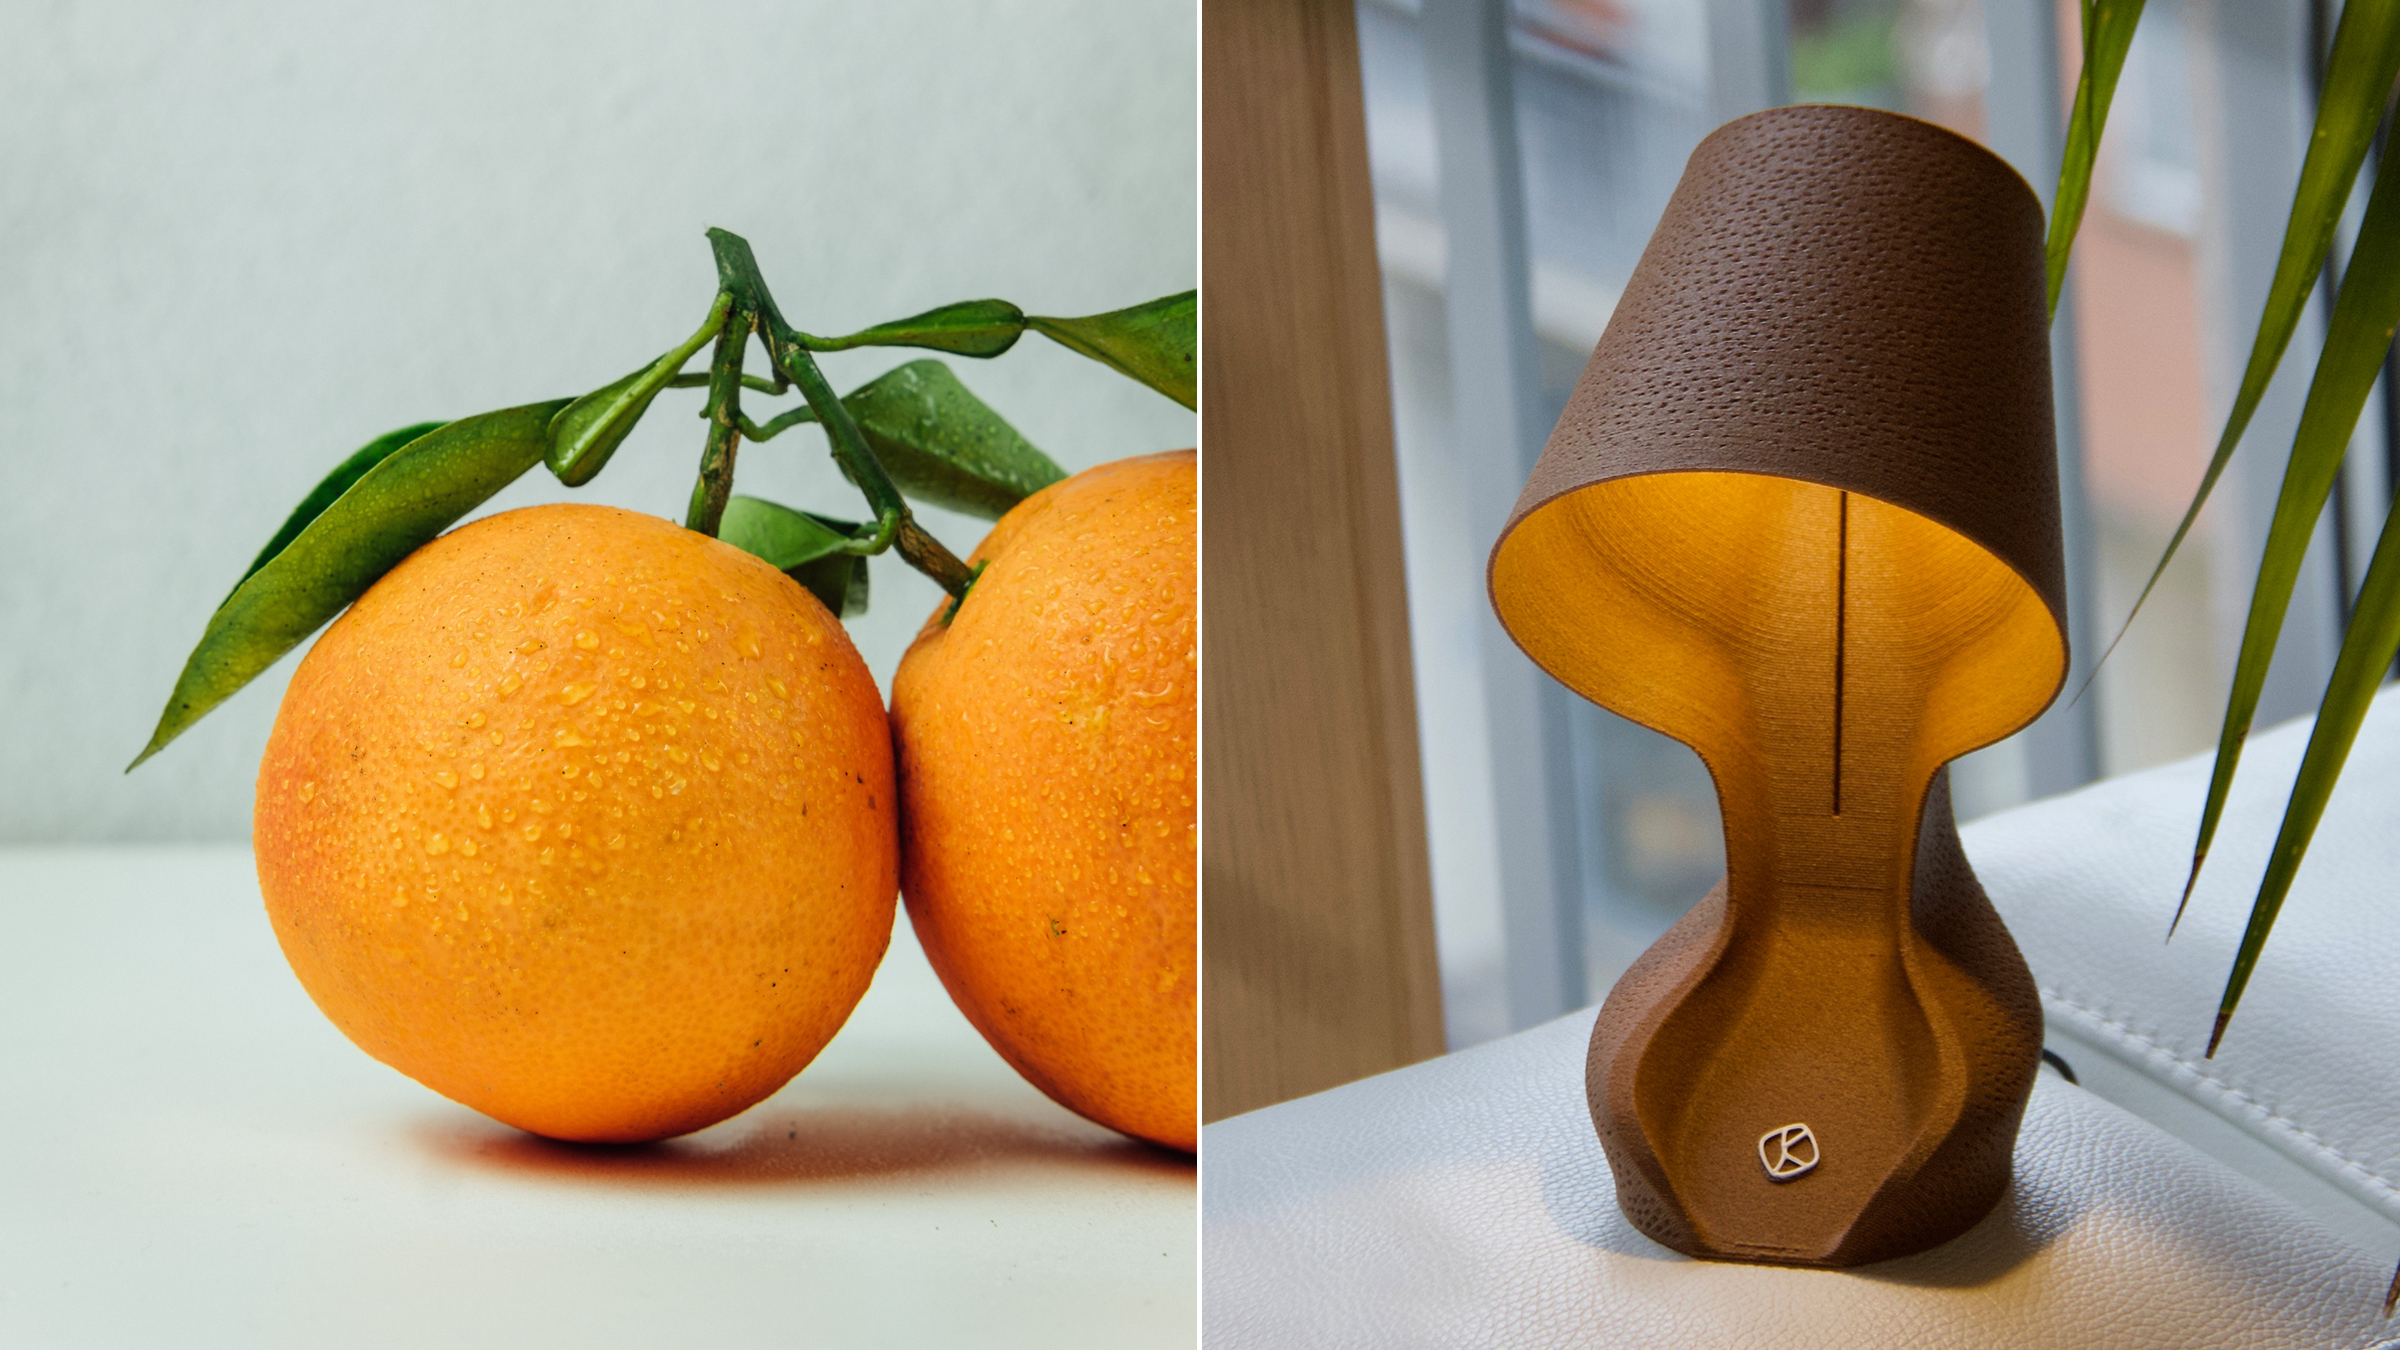 Cette lampe a été conçue avec des pelures d'oranges grâce à l'impression 3D